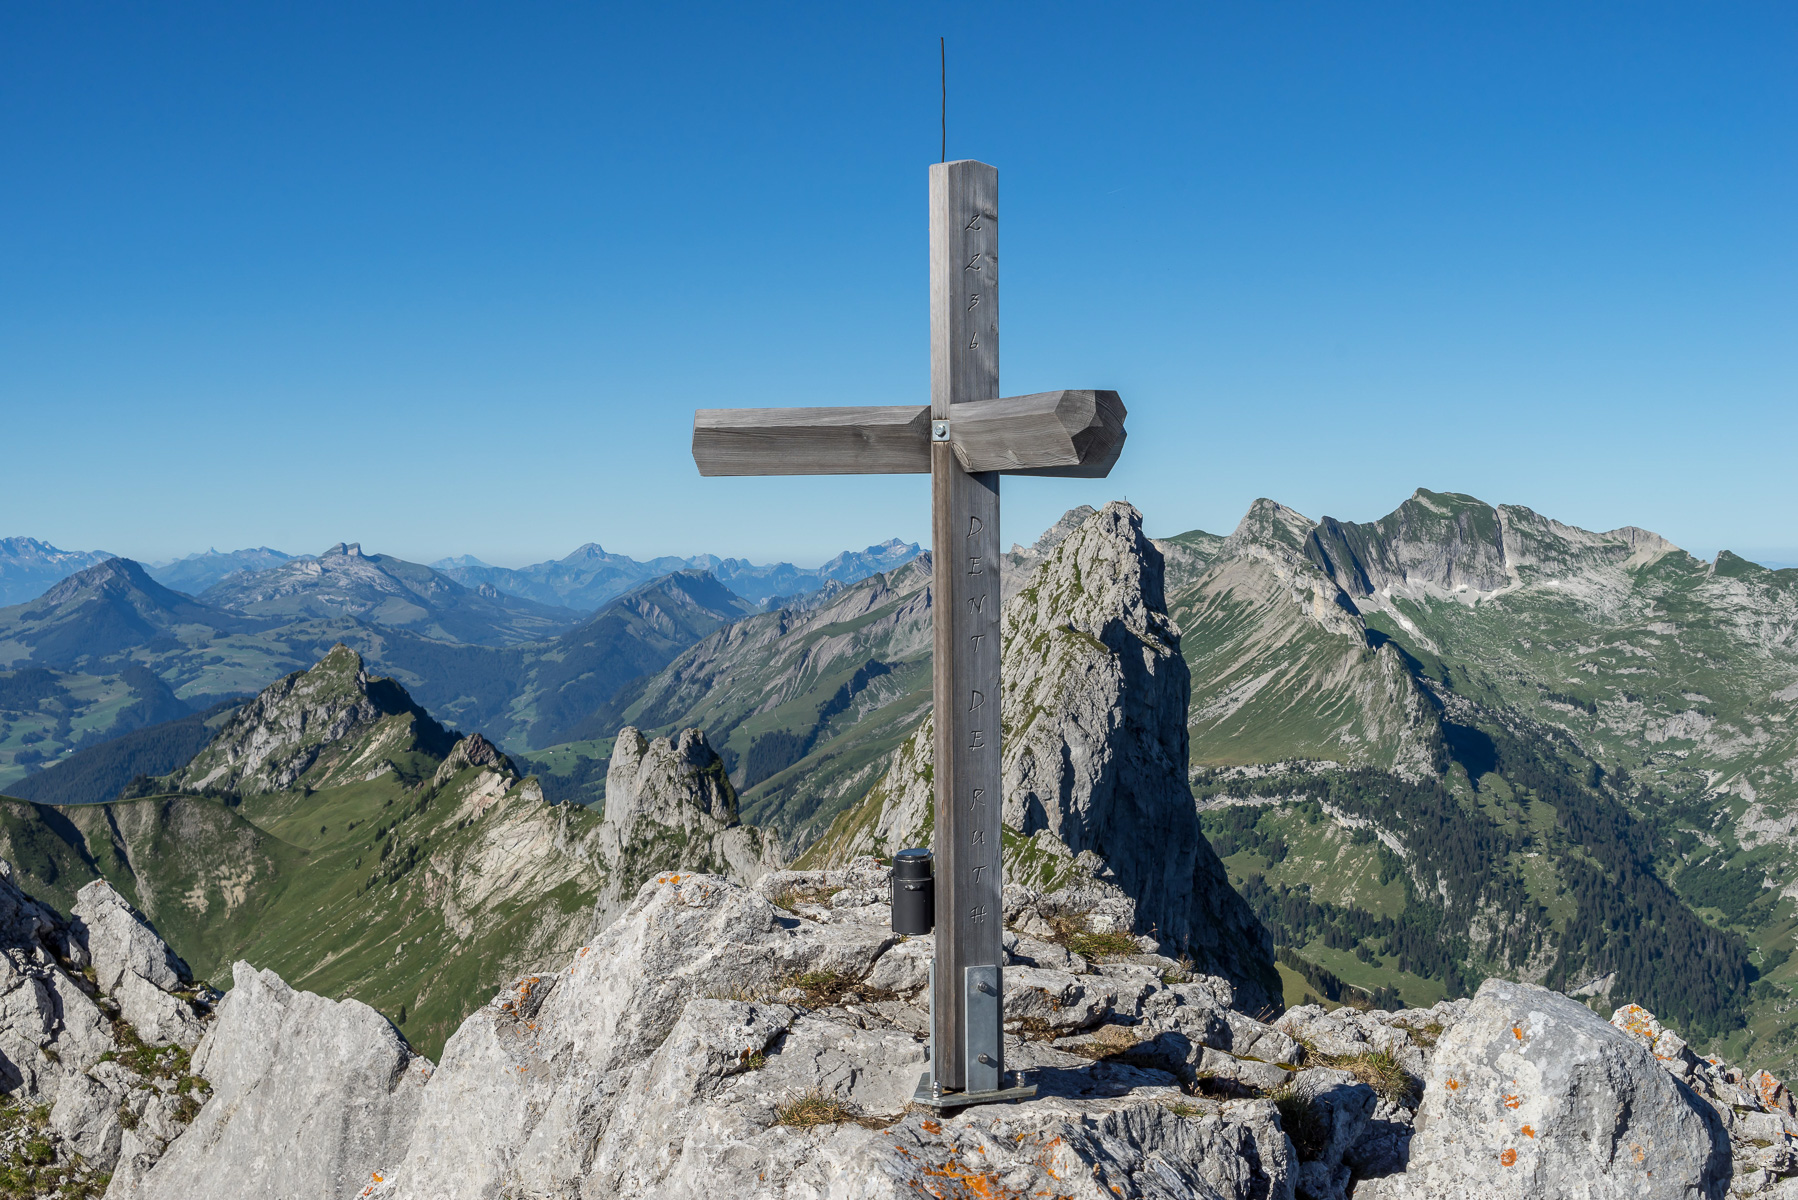 Ein dreiarmiges Gipfelkreuz für die drei Kantone, die sich hier treffen: Bern, Fribourg, Vaud.